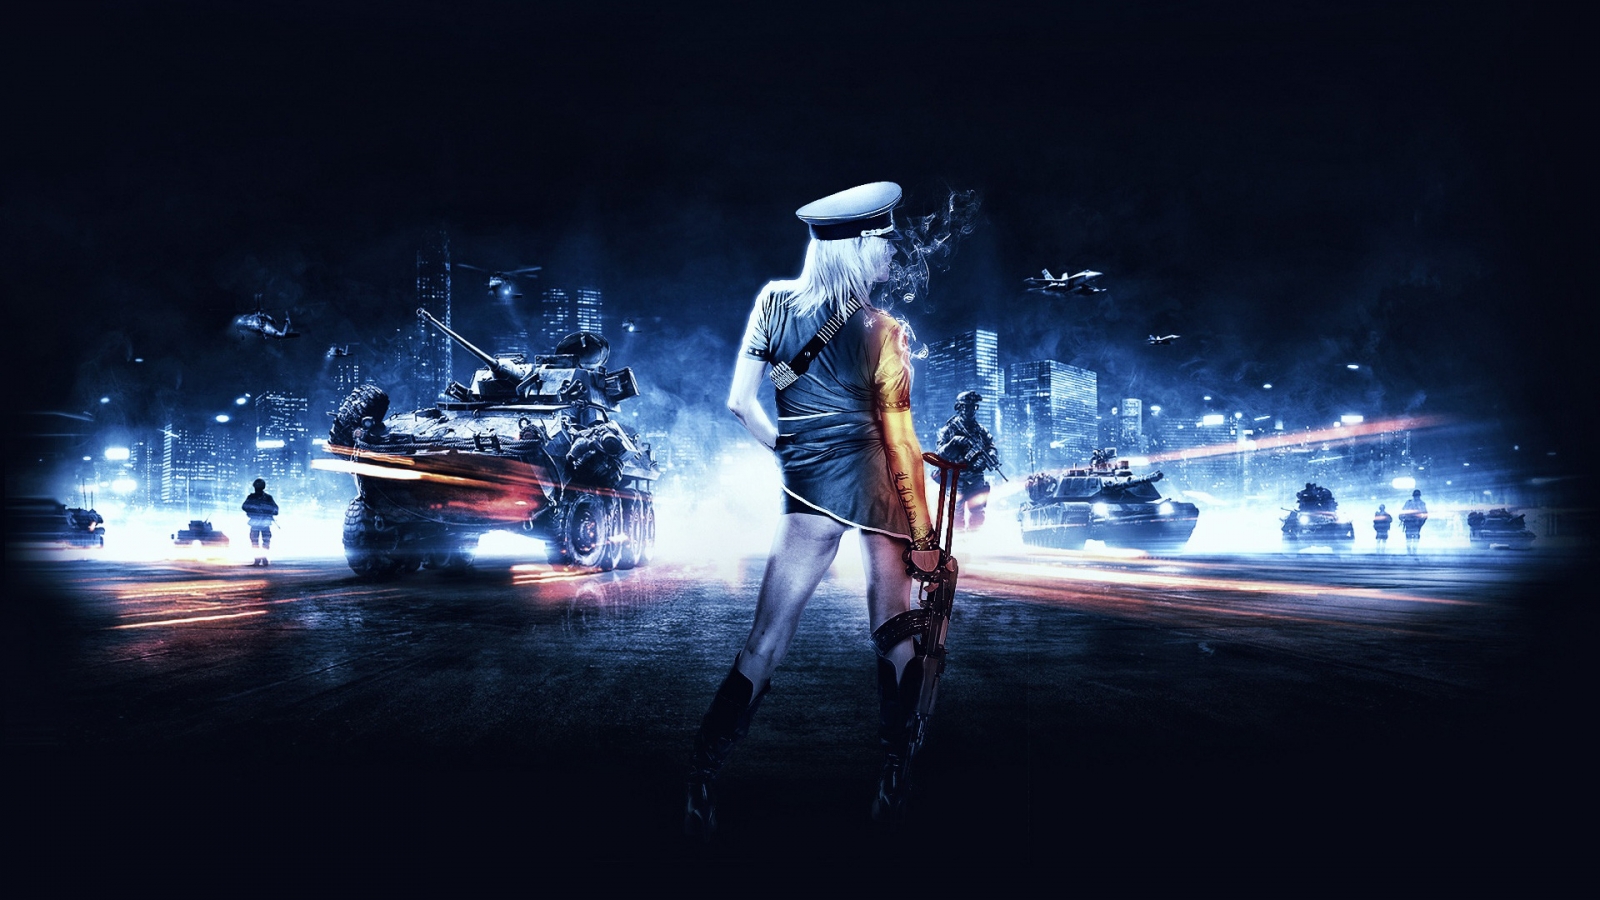 Battlefield 3 Girl for 1600 x 900 HDTV resolution